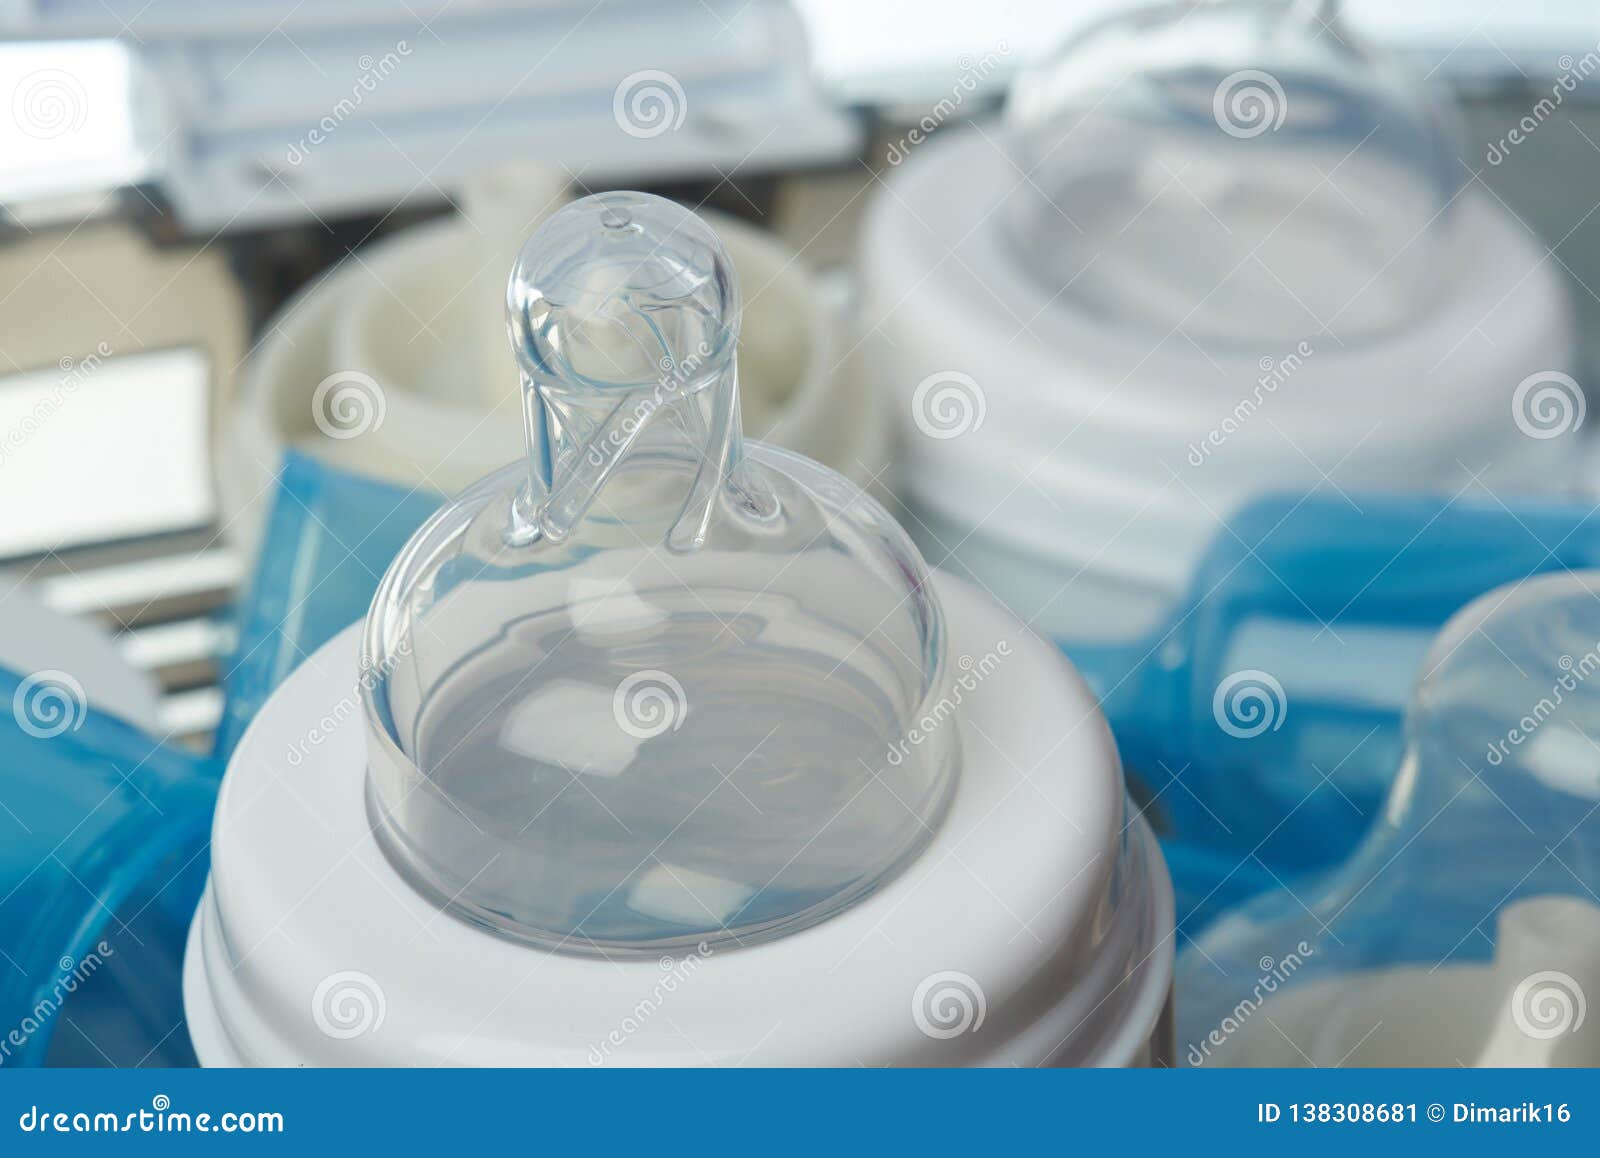 boiling plastic baby bottles